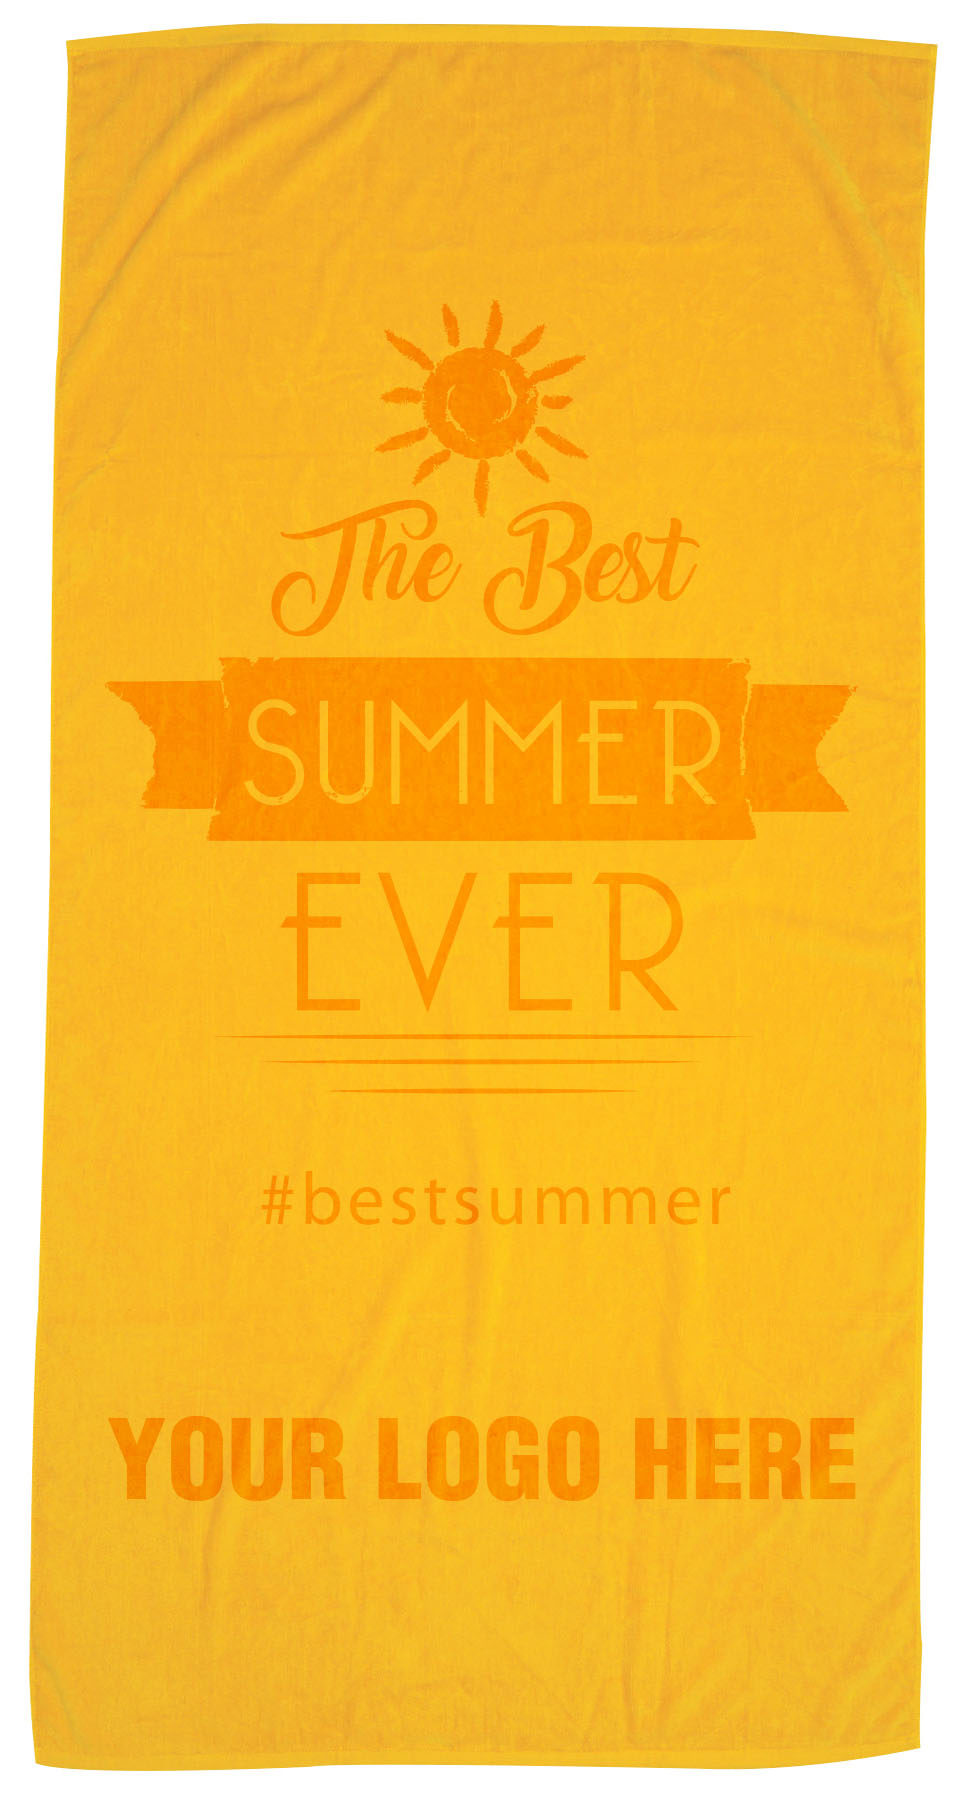 PTBS-Best Summer Ever2